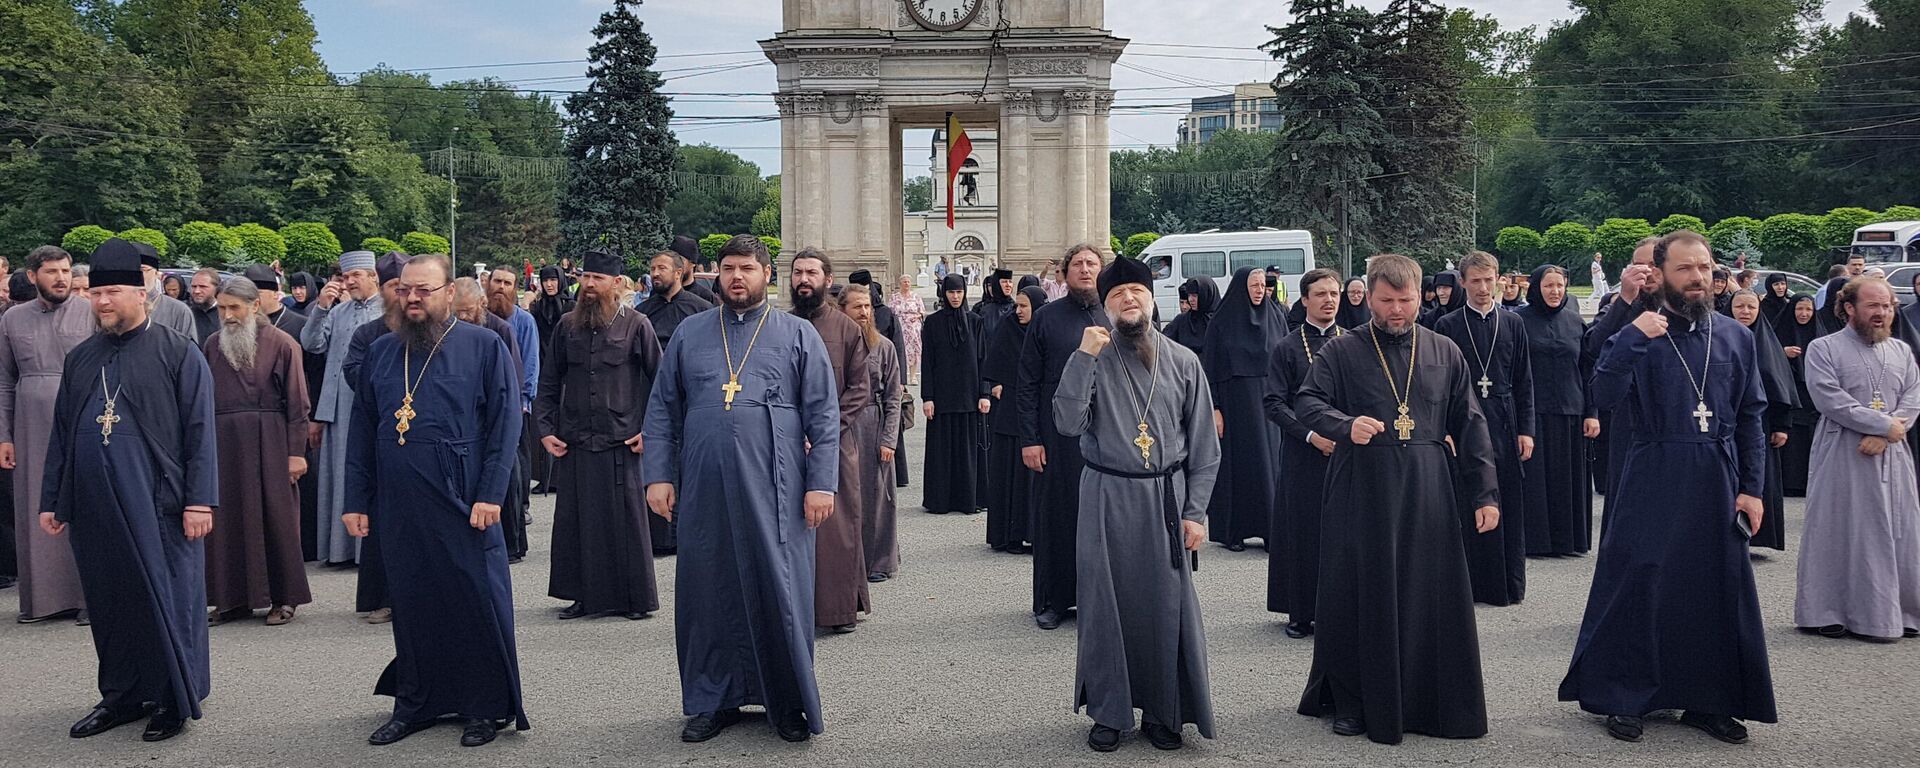 Zeci de preoți protestează în centrul Capitalei împotriva vaccinării obligatorii - Sputnik Moldova, 1920, 03.08.2021